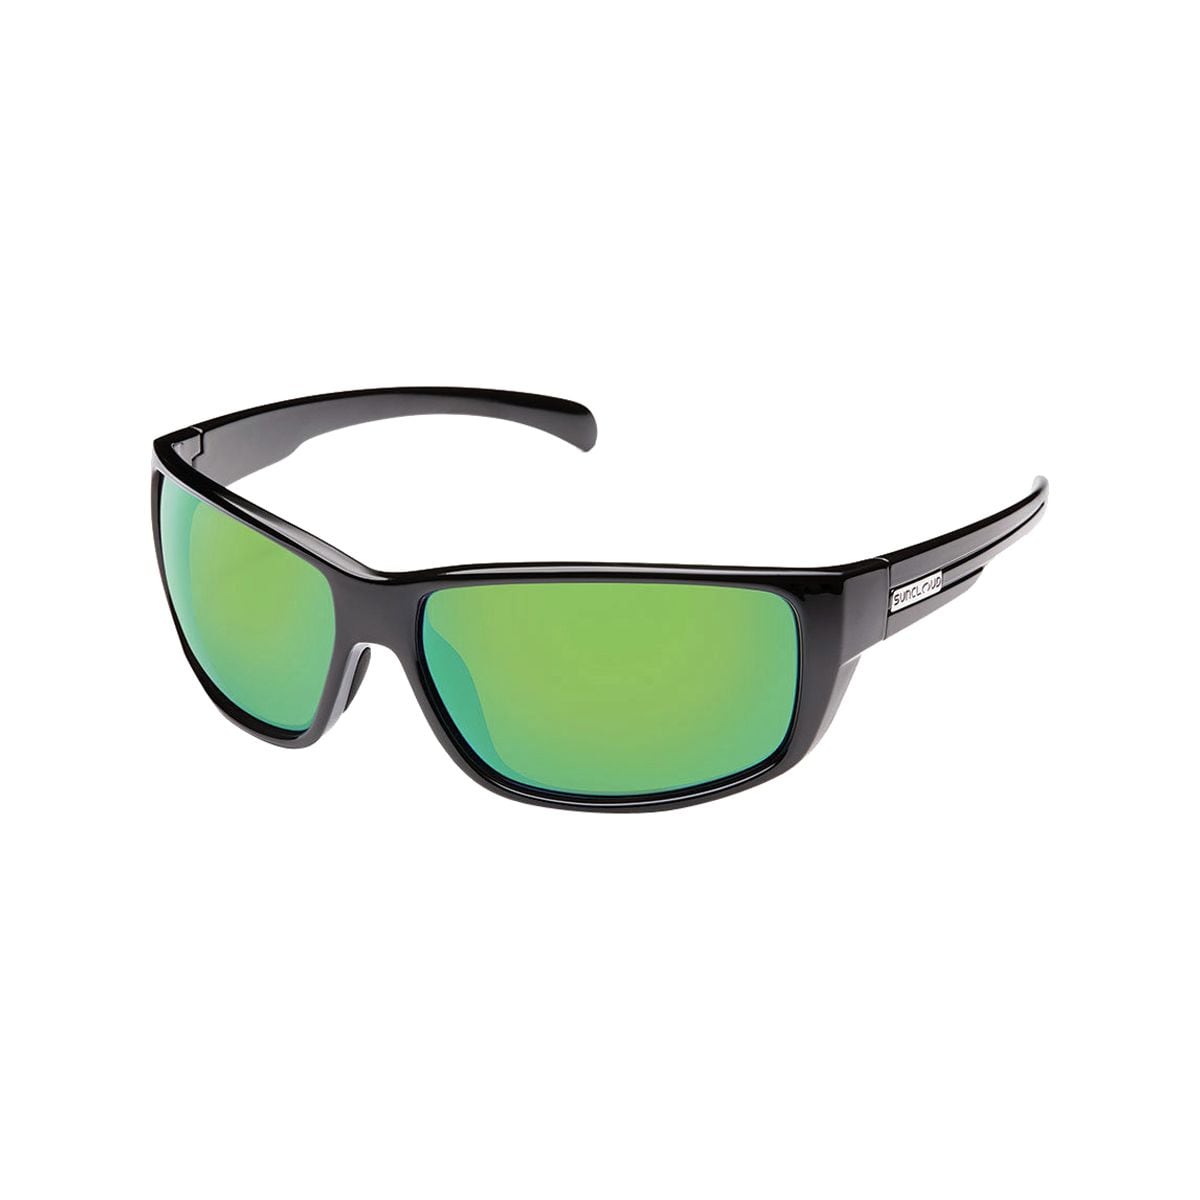 Поляризационные солнцезащитные очки milestone Suncloud Polarized Optics, цвет black/green mirror